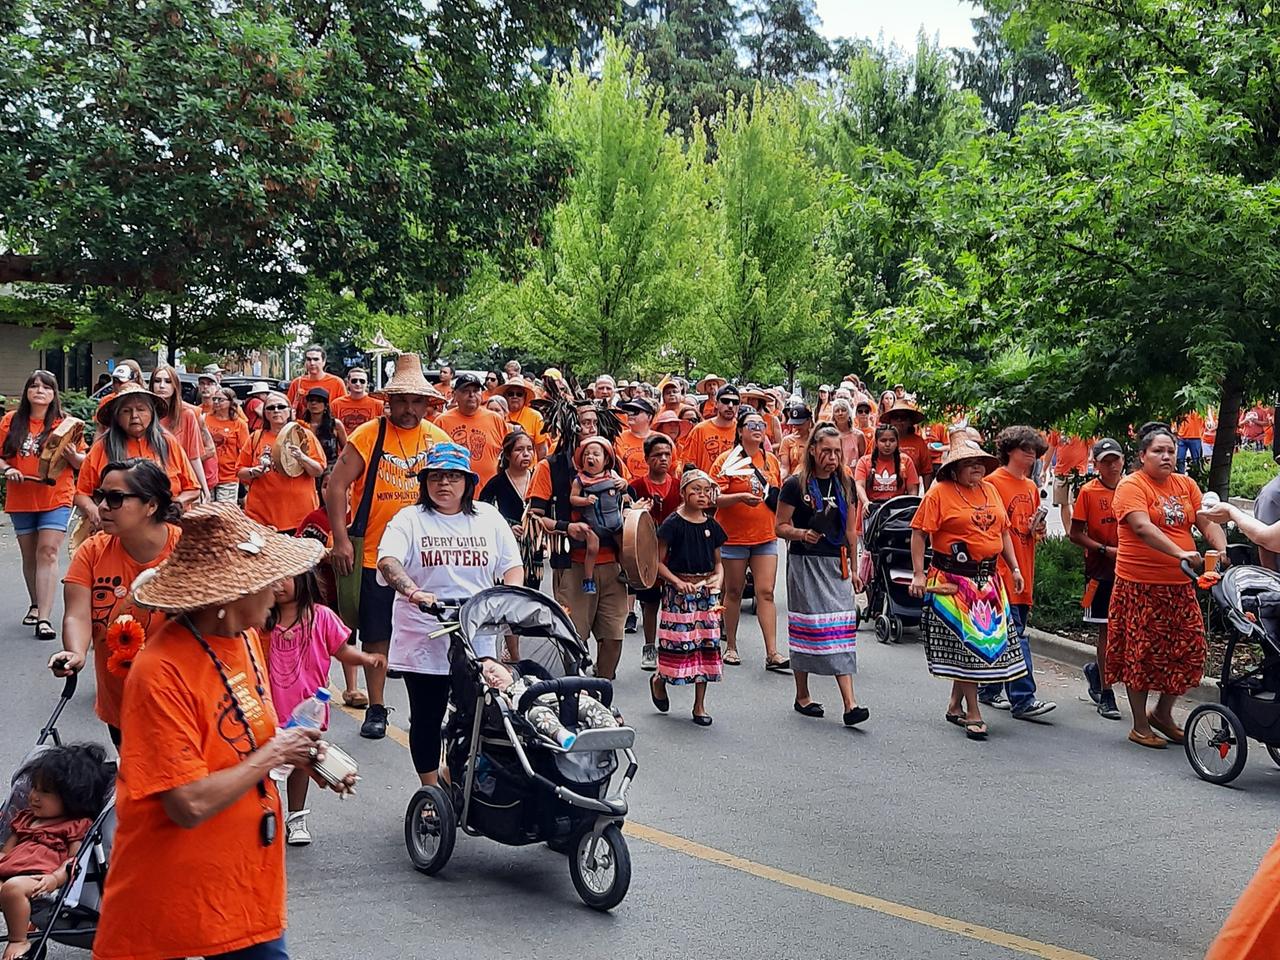 Männer, Frauen und Kinder laufen protestierend durch die Straßen. Sie tragen orangene T-Shirts, zum Teil mit der Aufschrift "Every Child Matters". 